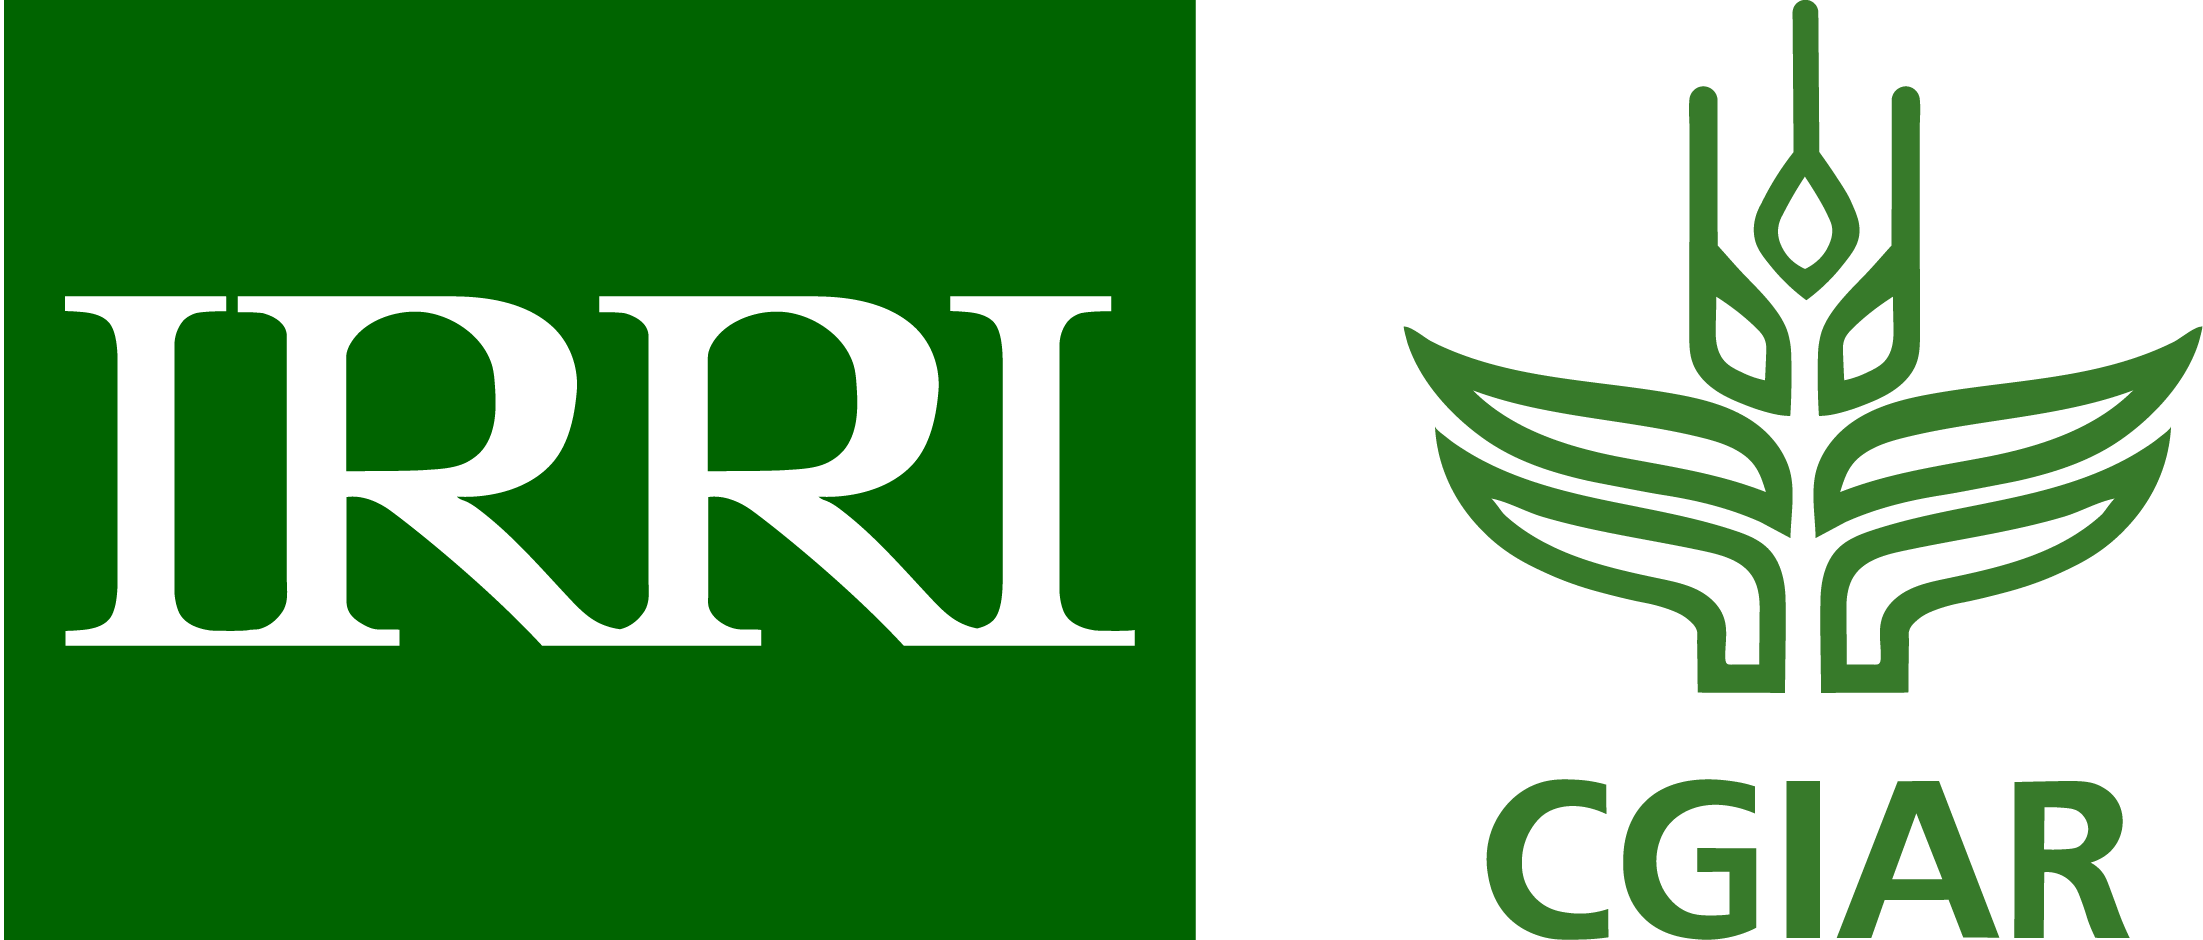 International Rice Research Institute (IRRI)